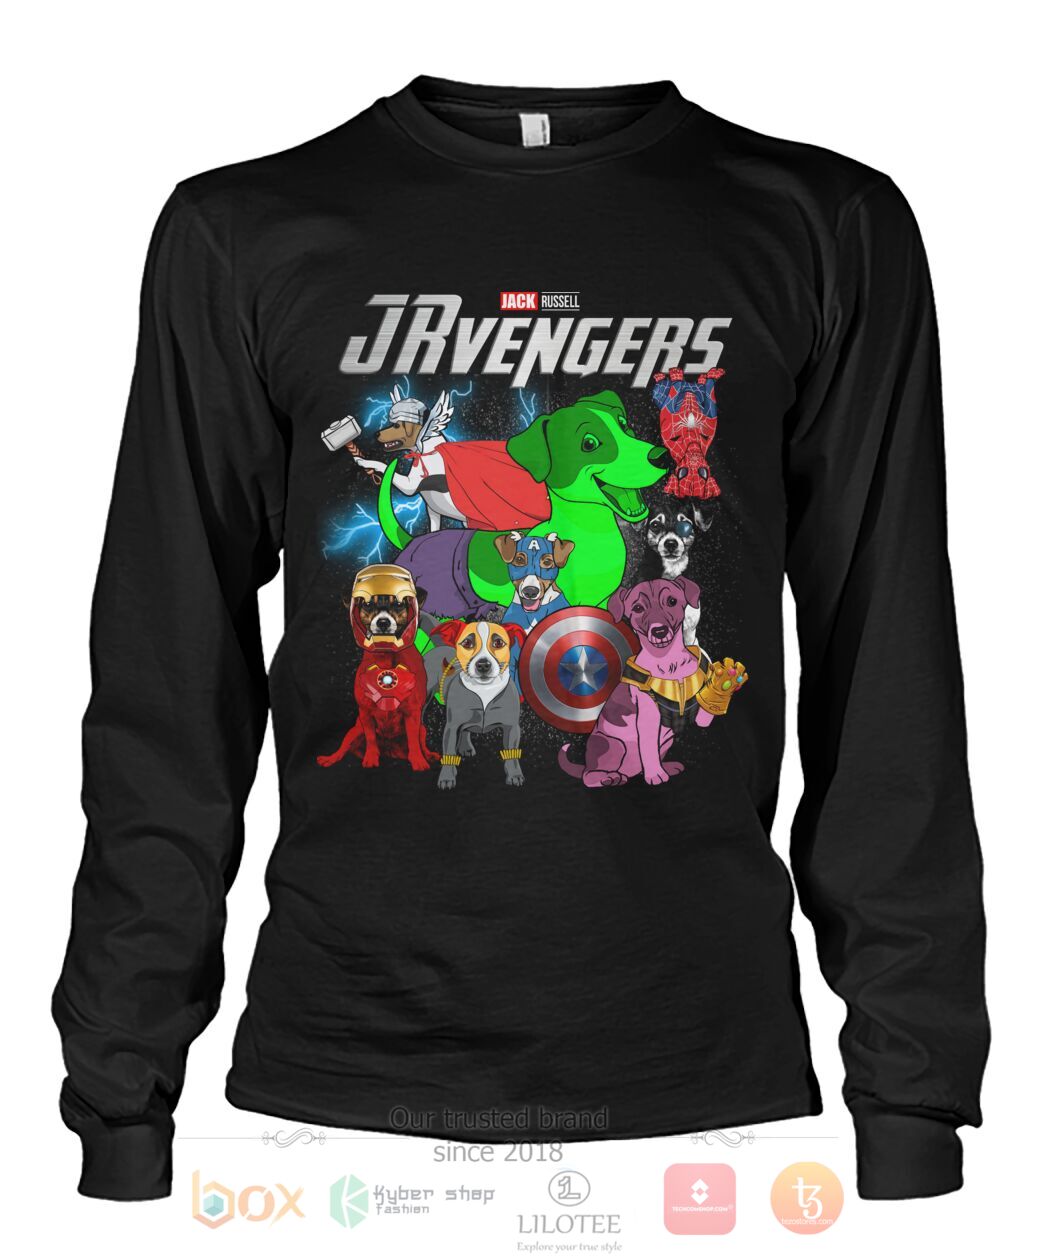 Jack Russell Jrvengers 3D Hoodie Shirt